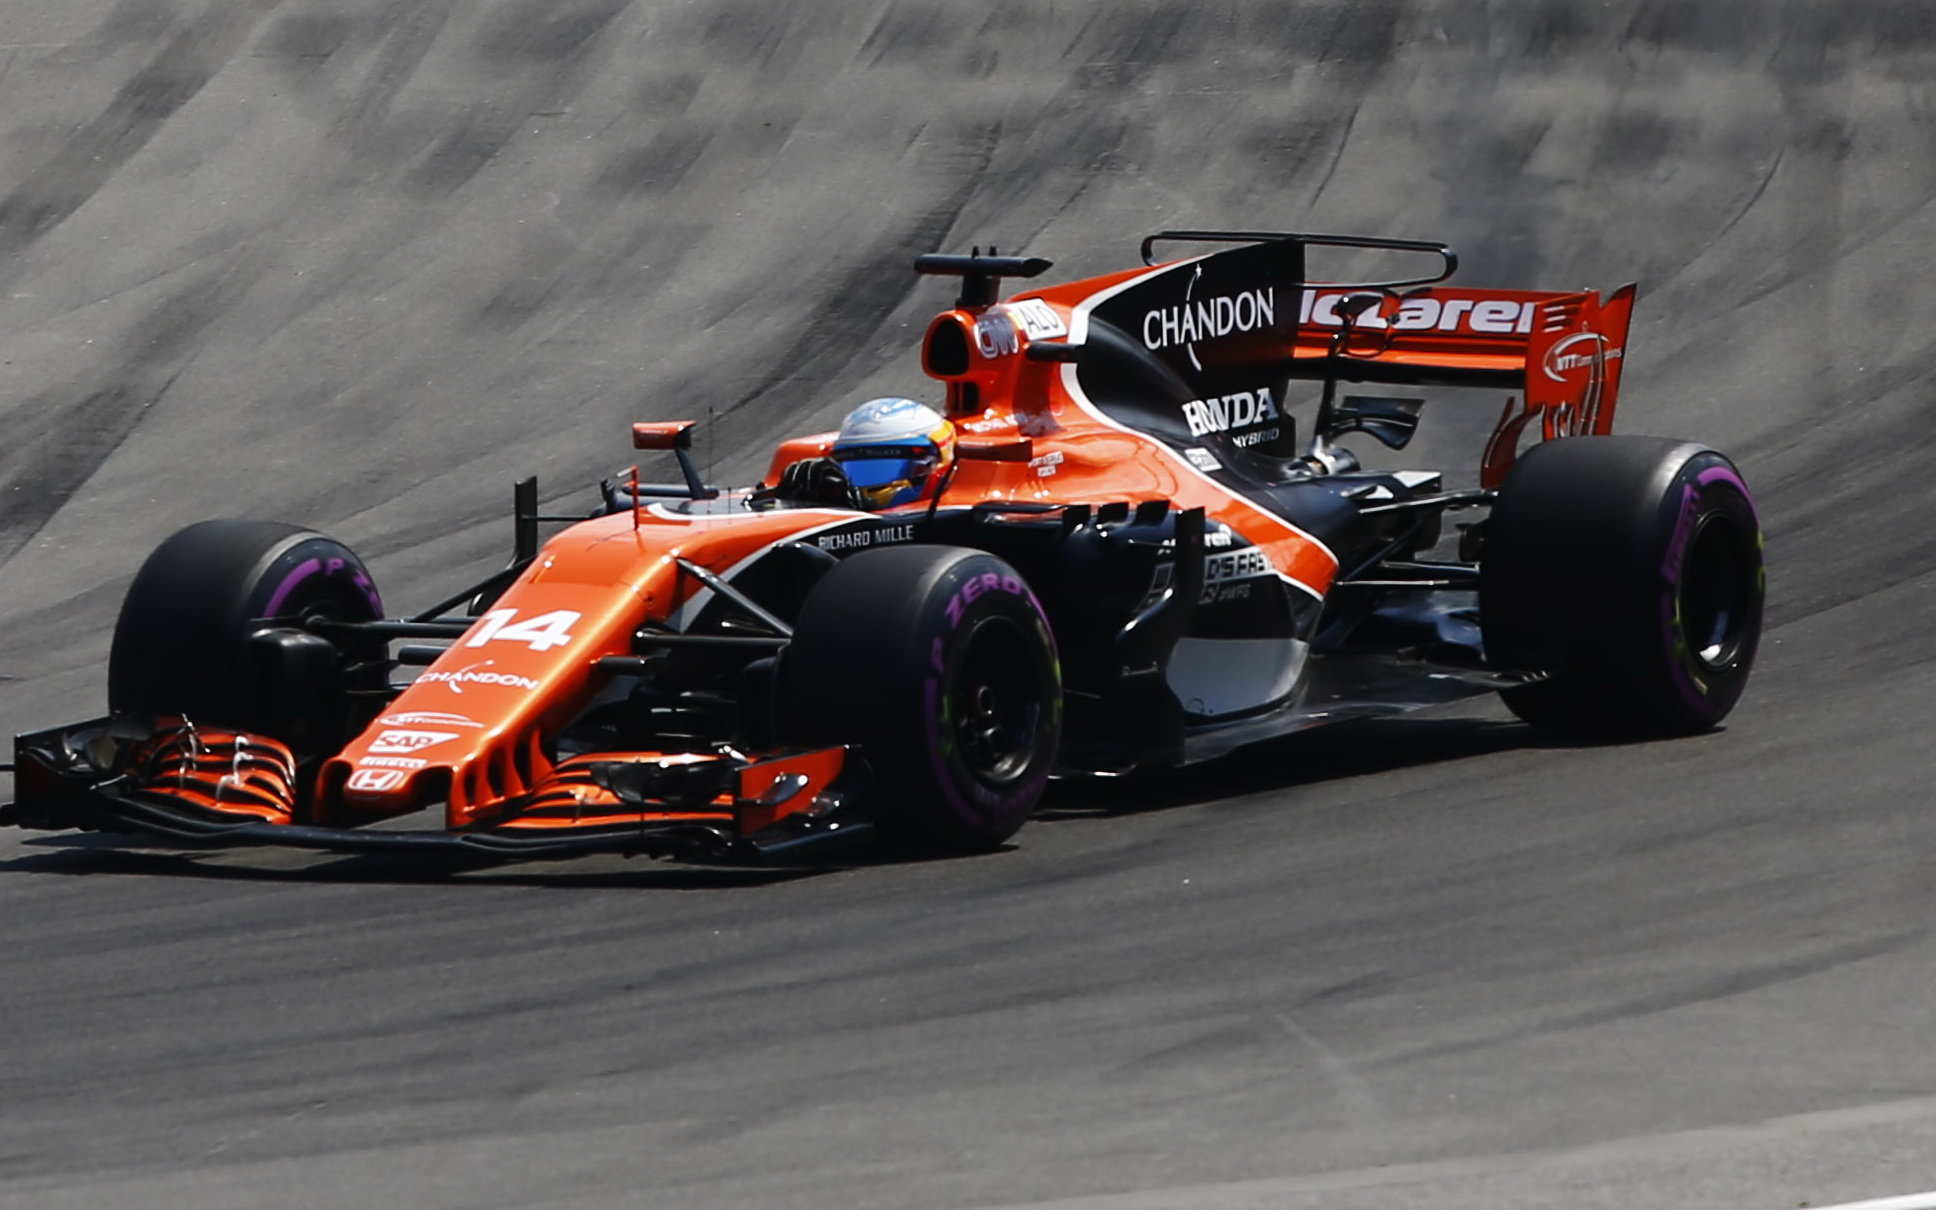 Fernando Alonso v závodě v Kanadě